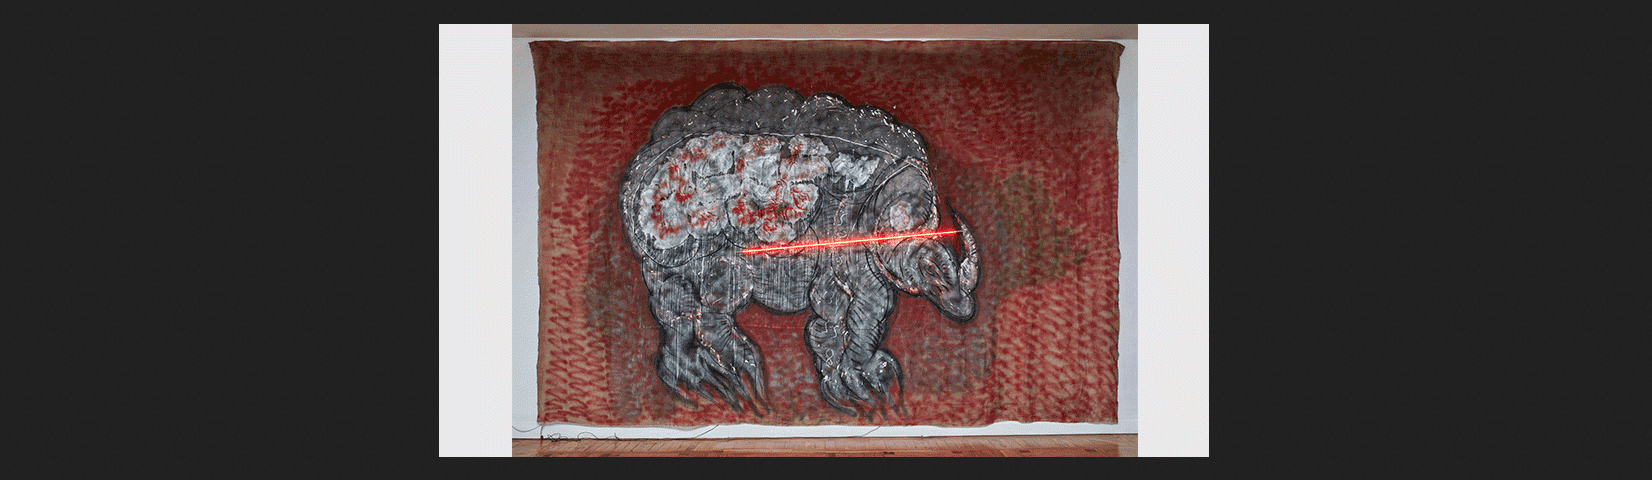 Mario Merz. Rinoceronte, 1979. Técnica mixta sobre tela y neón, 291 x 435 cm. Colección particular, Madrid. © Mario Merz by SIAE, VEGAP, Madrid, 2019